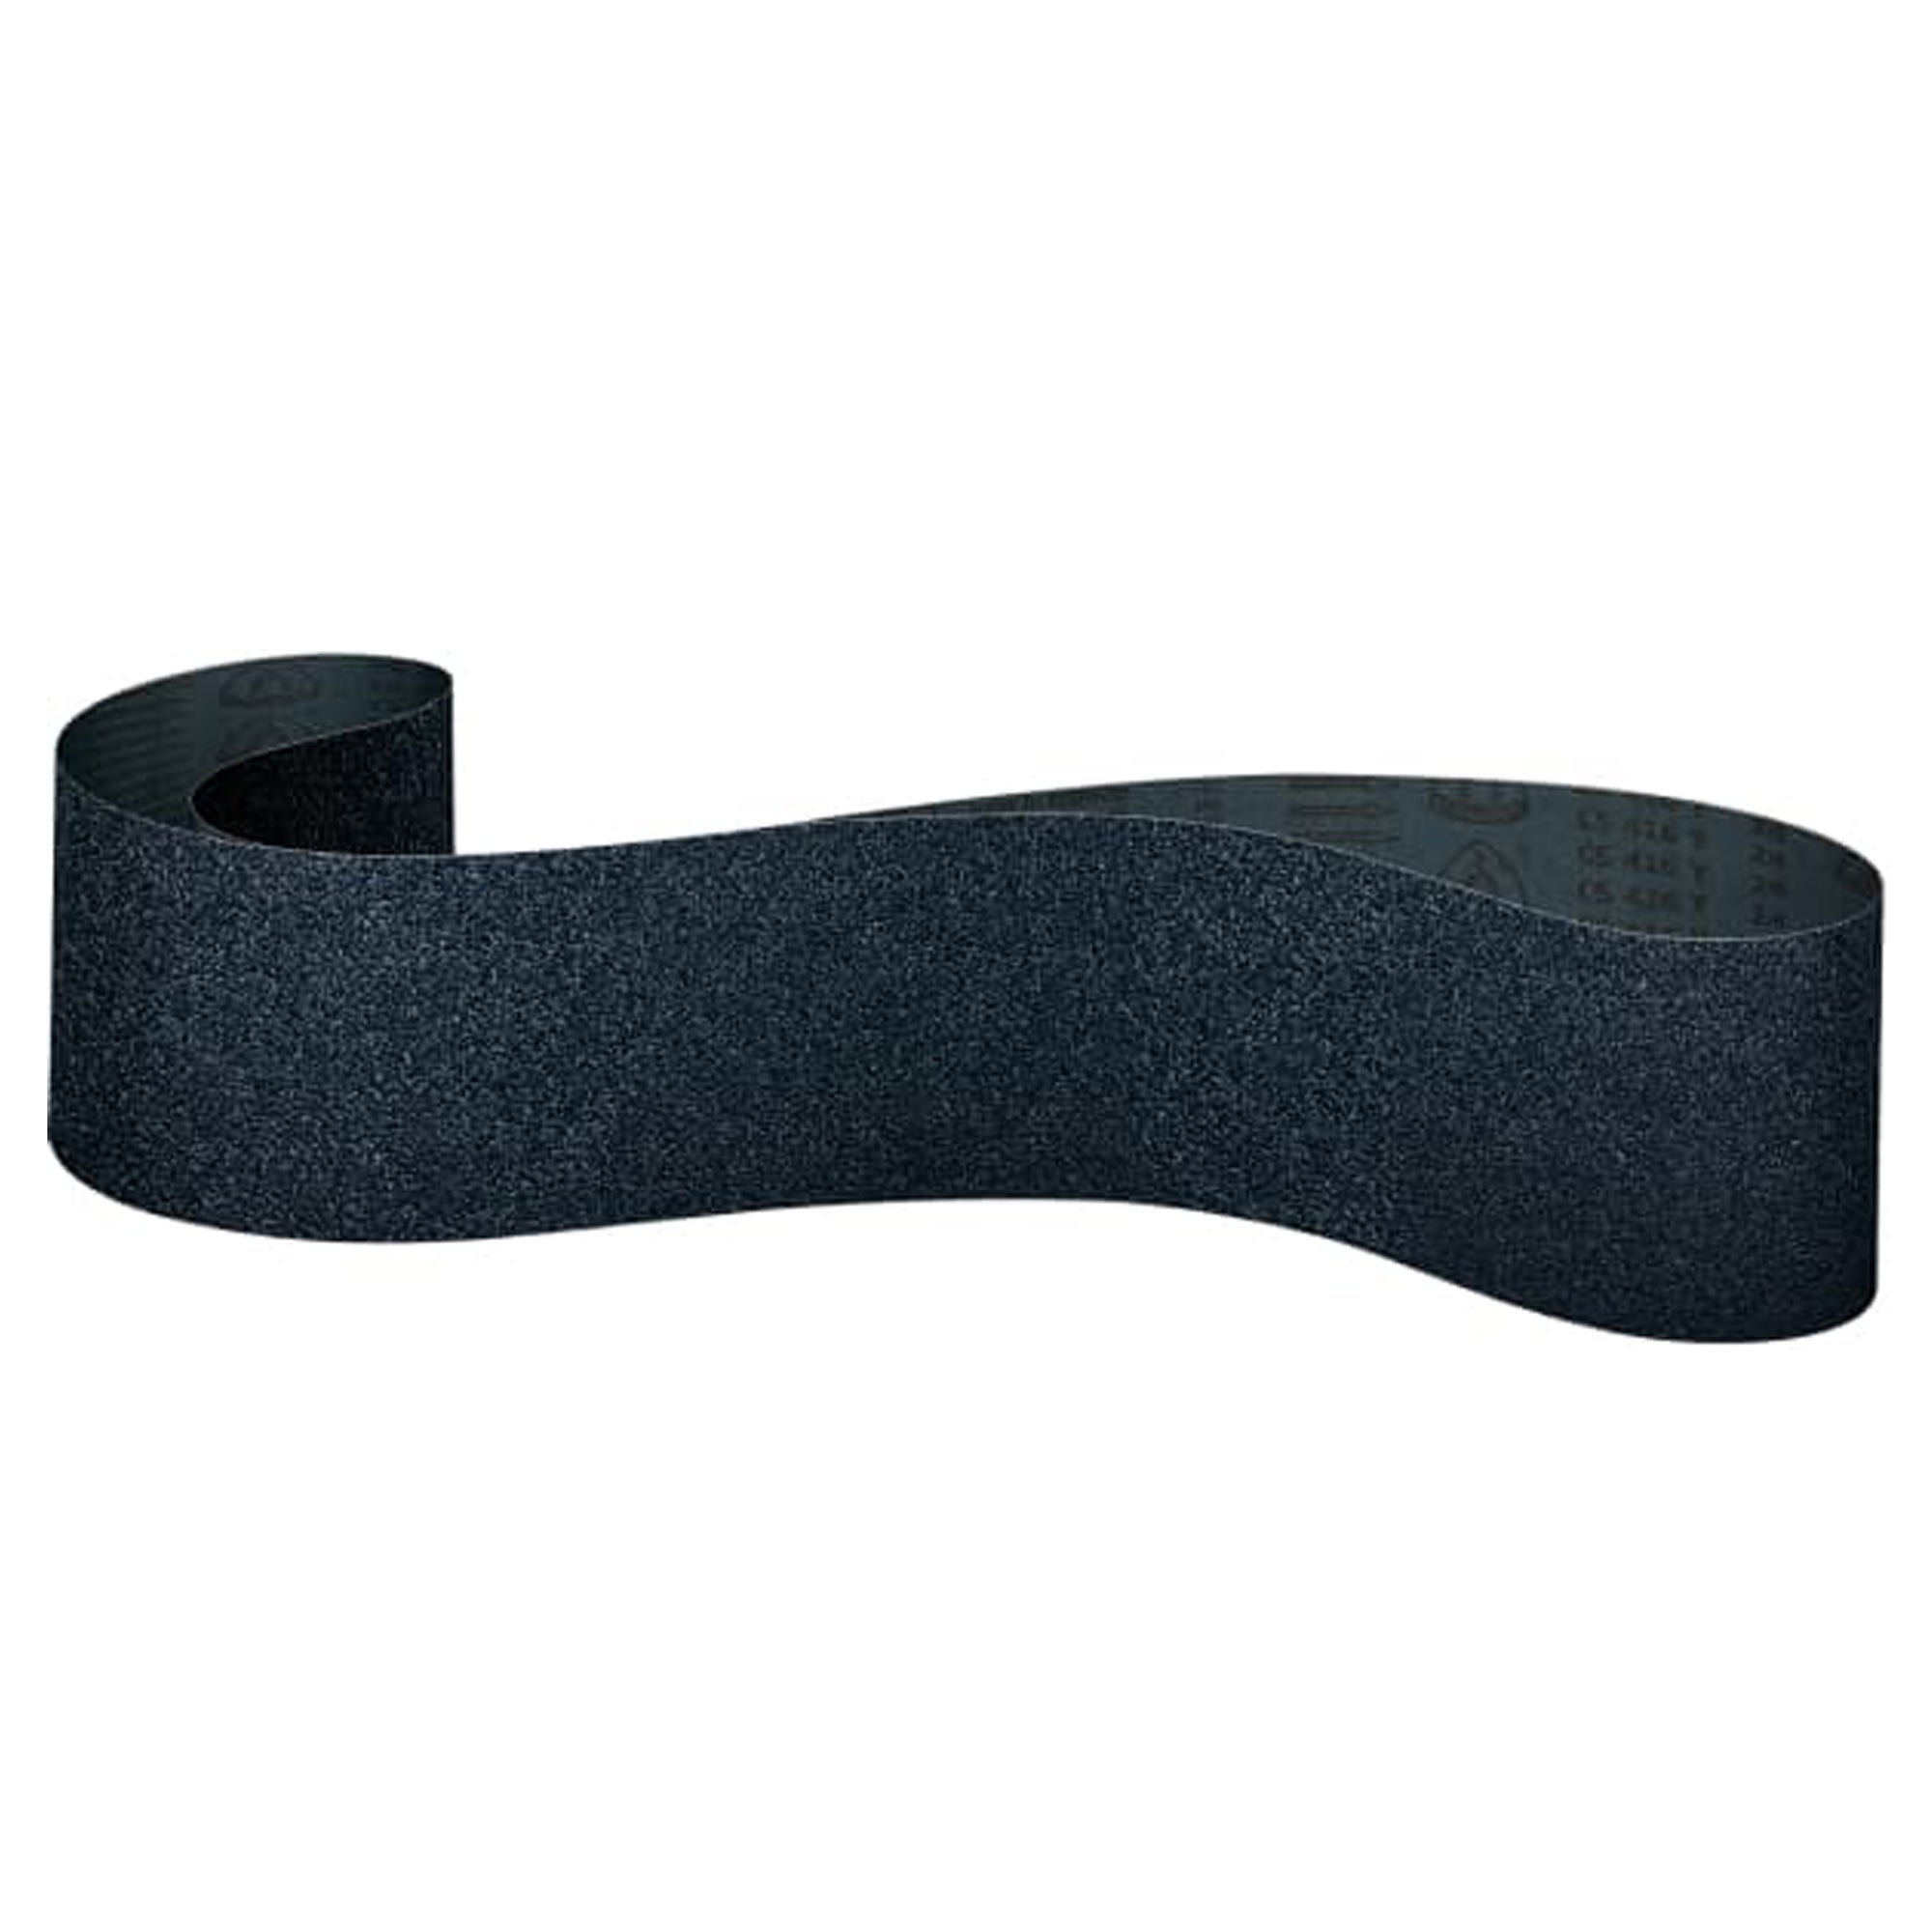 915mm x 50mm Zirconia Abrasive Belt by Klingspor